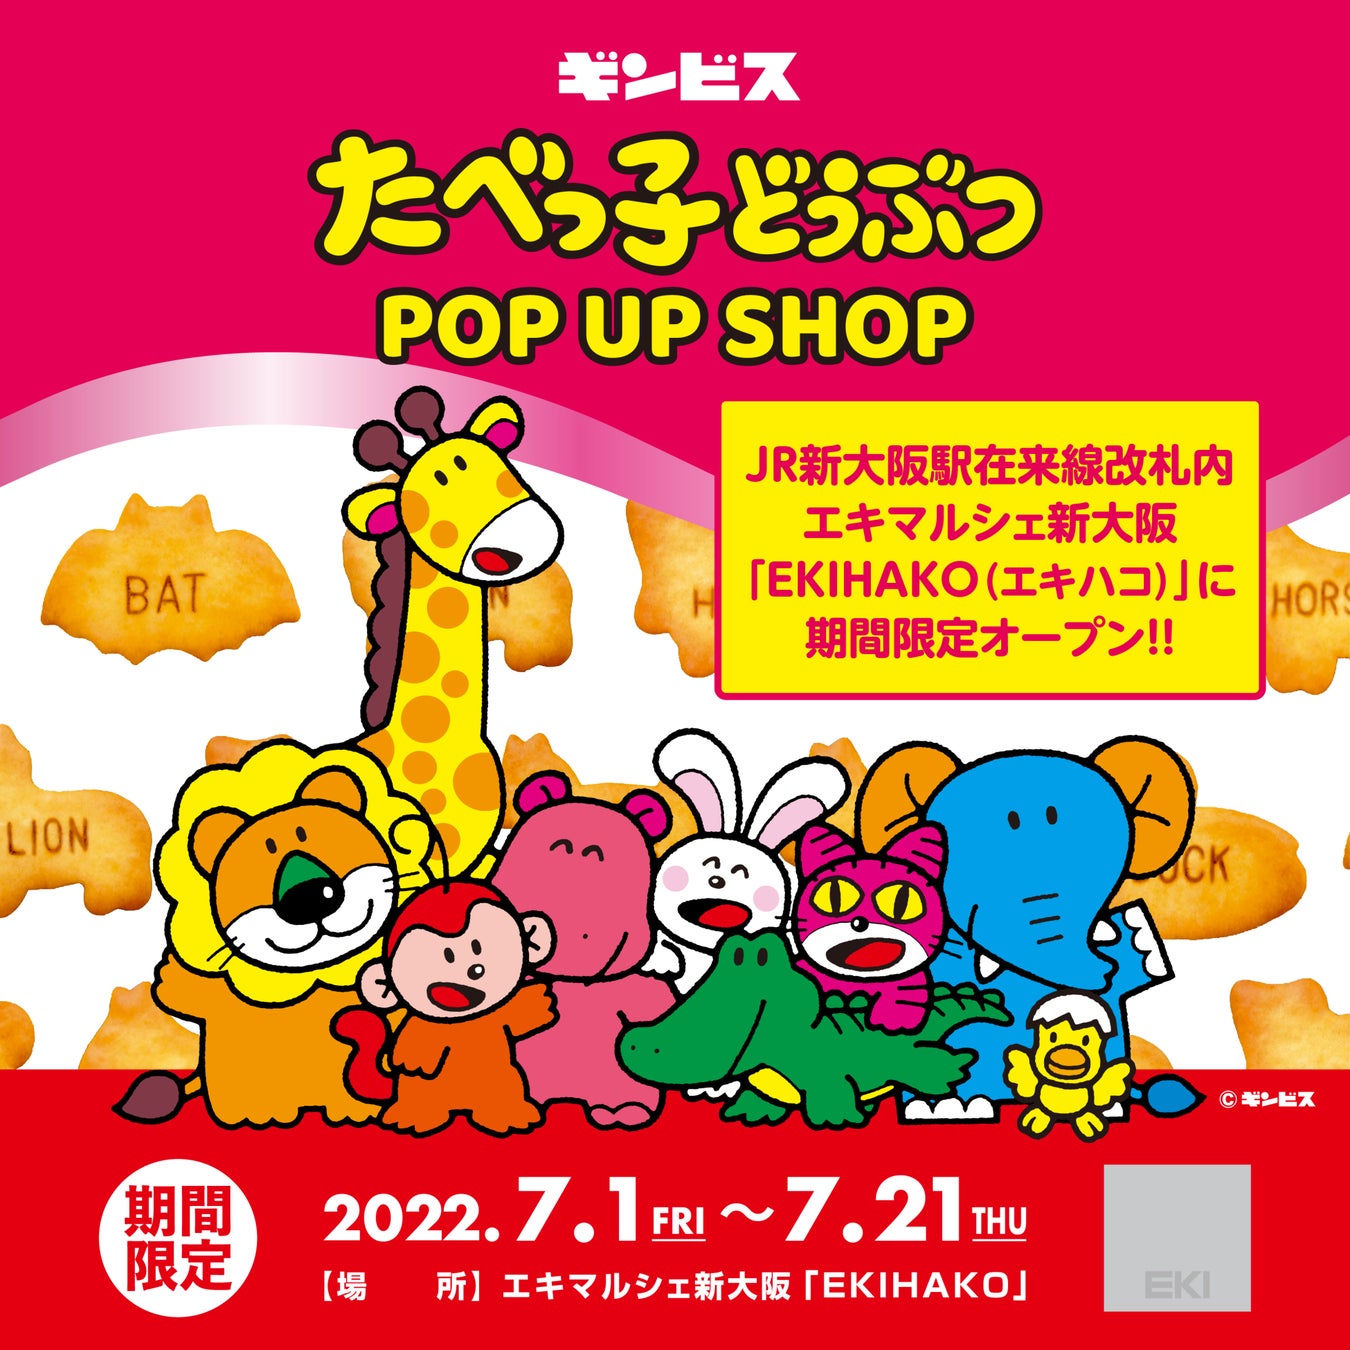 食を通じて日本のよいものをお届け「NIPPON食樂発見 in 宮崎」カフェ レクセルで6月30日(木)より